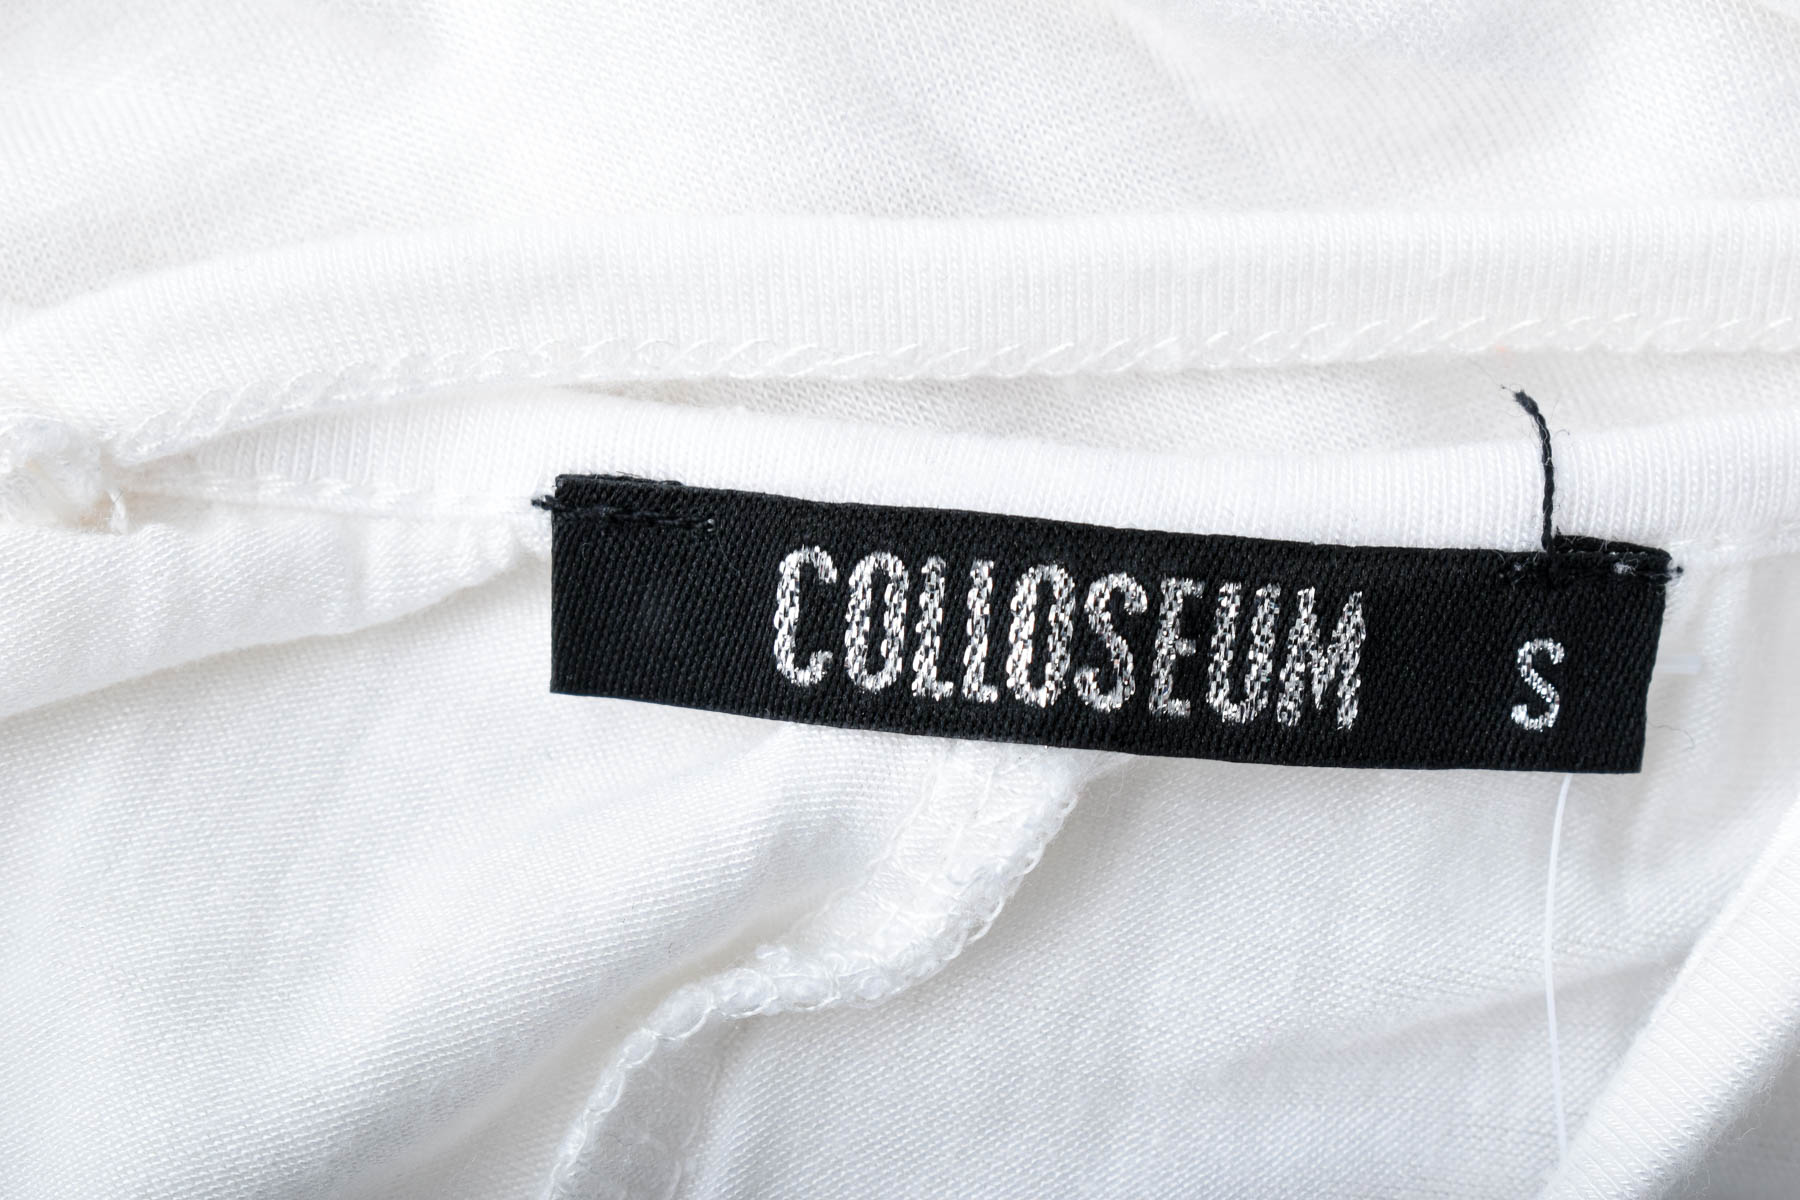 Γυναικεία μπλούζα - COLLOSEUM - 2